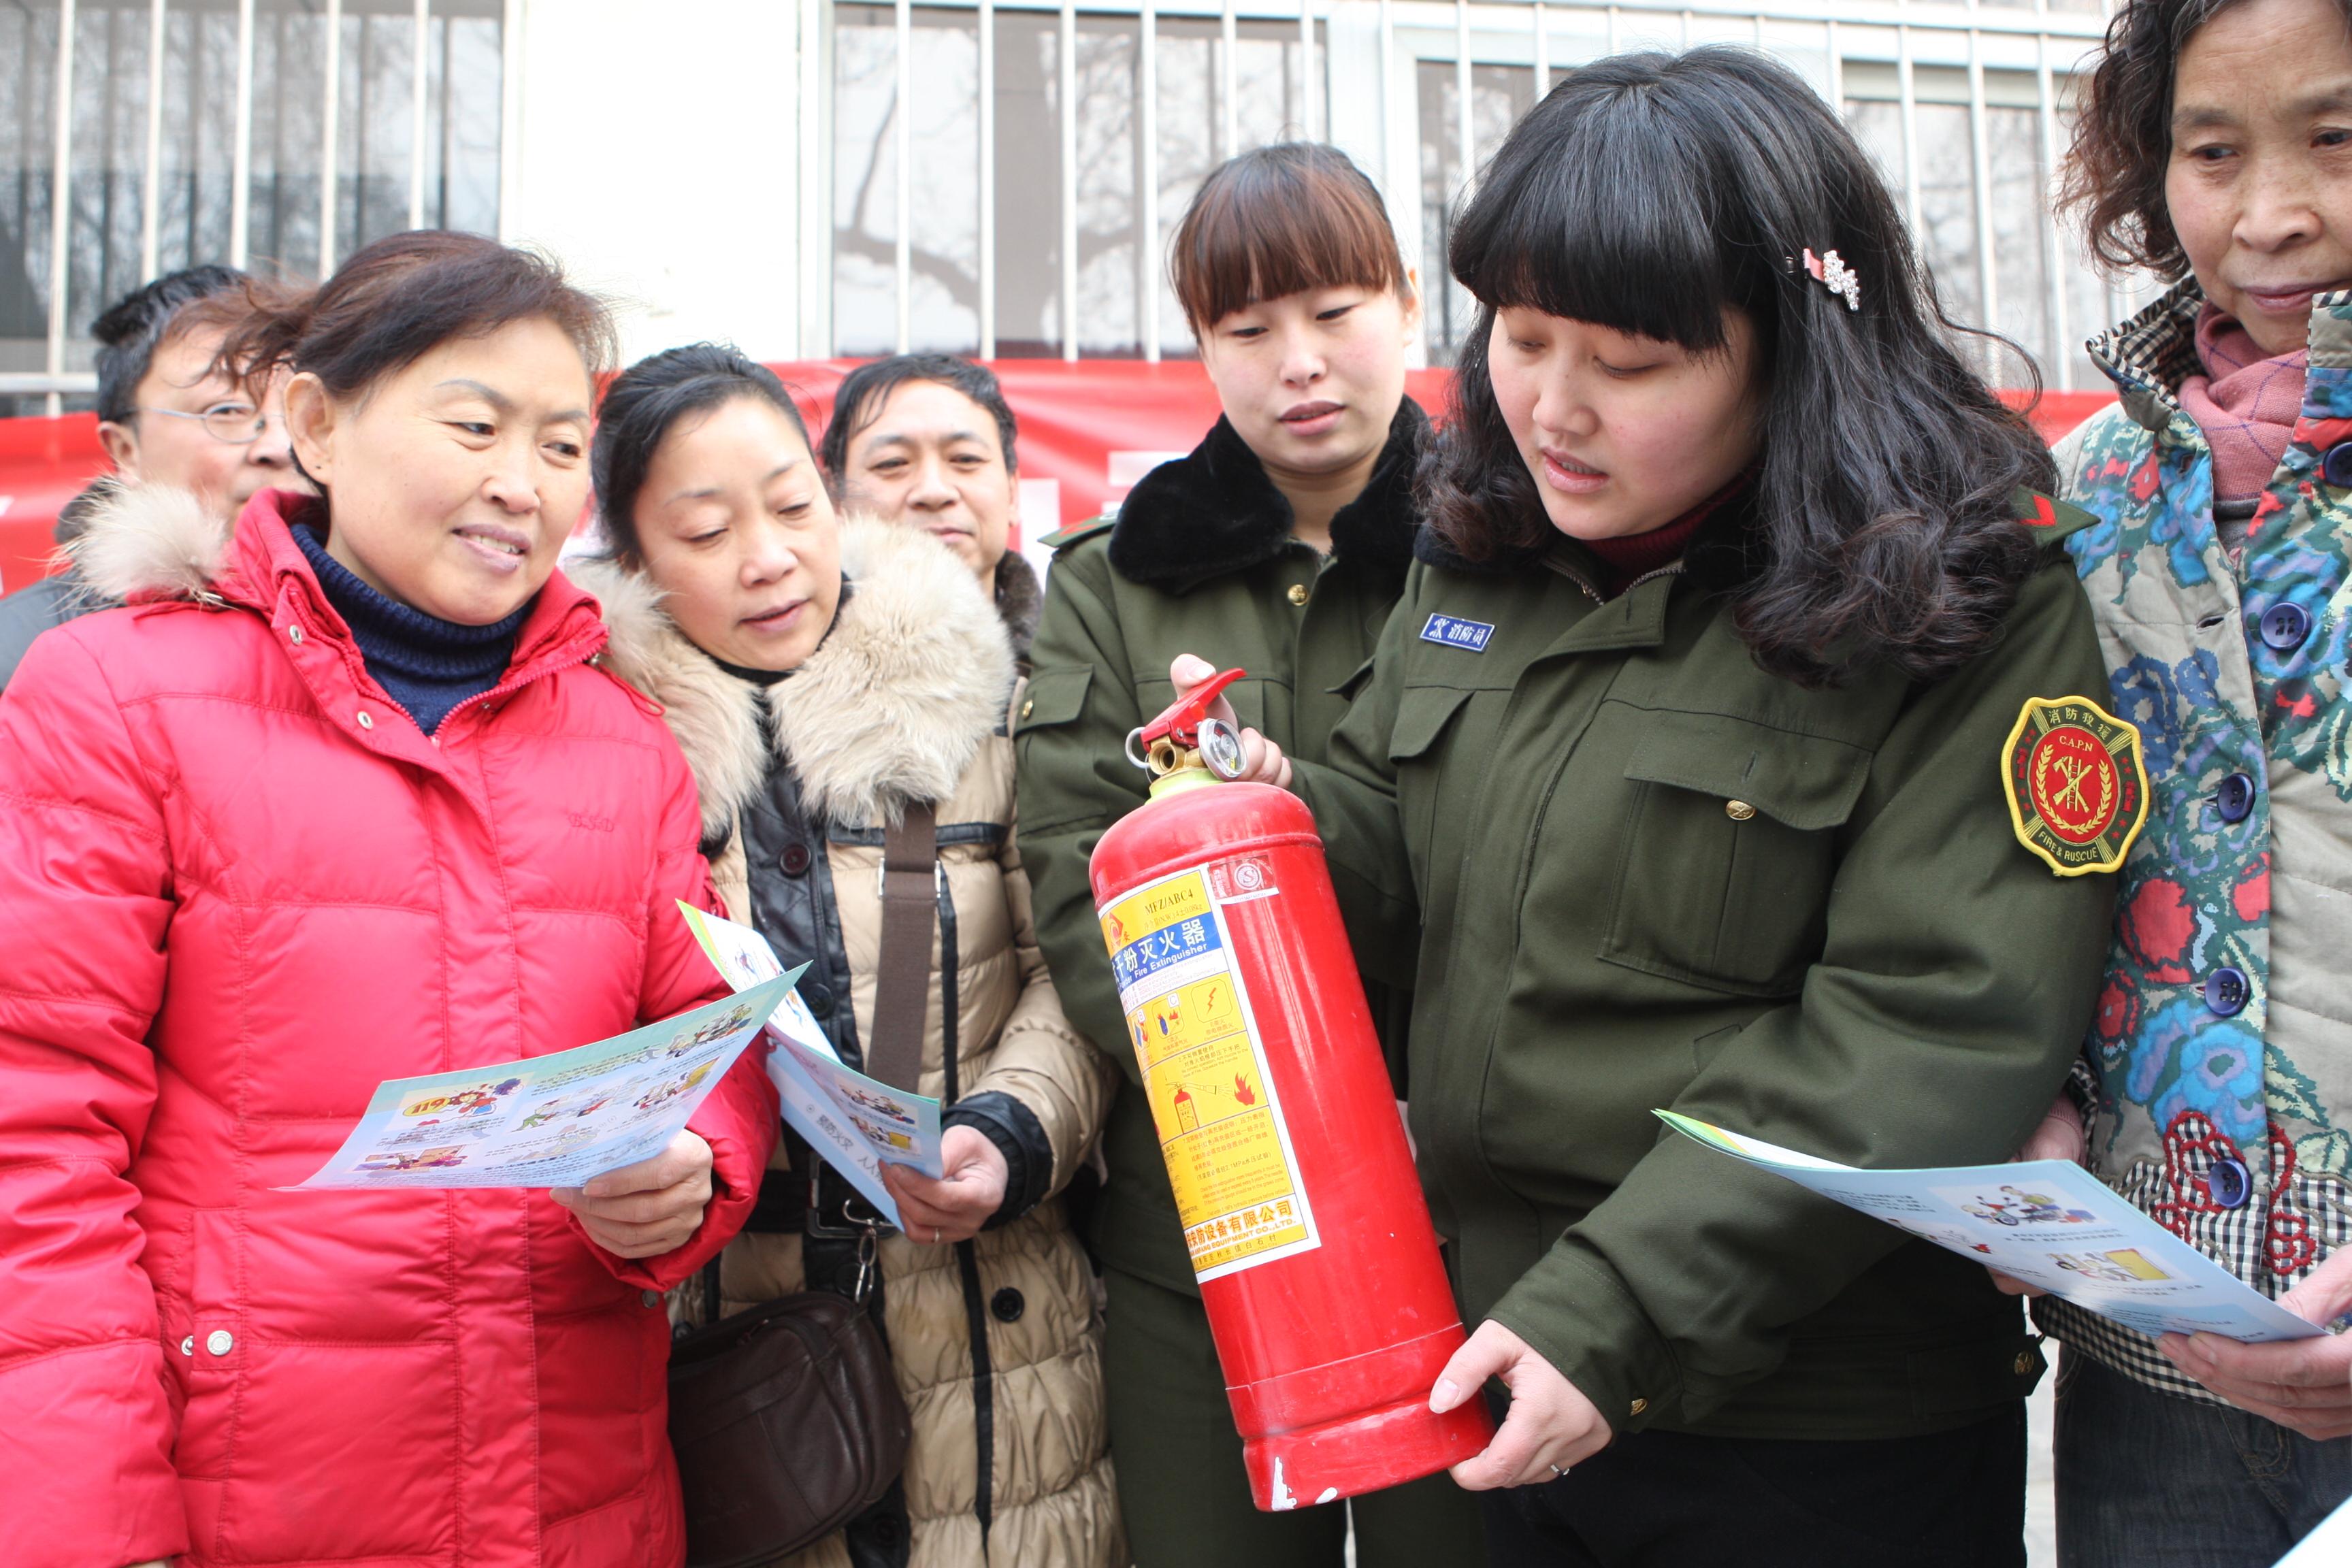 图片新闻:解放区抓好春节前消防安全知识普及